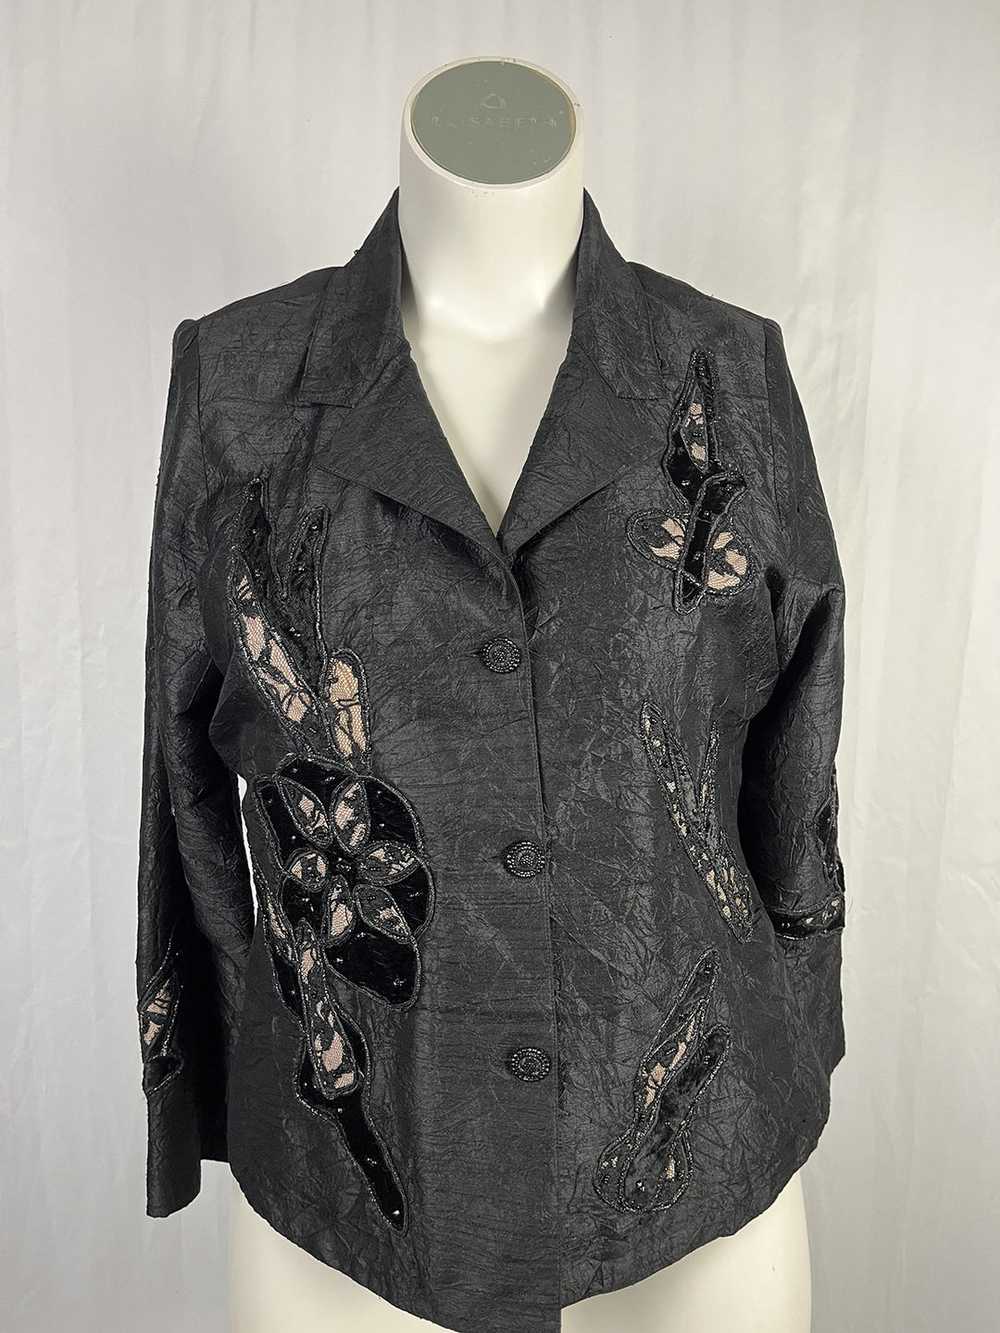 Anage Size 14 Black & Beige Floral Jacket - image 1